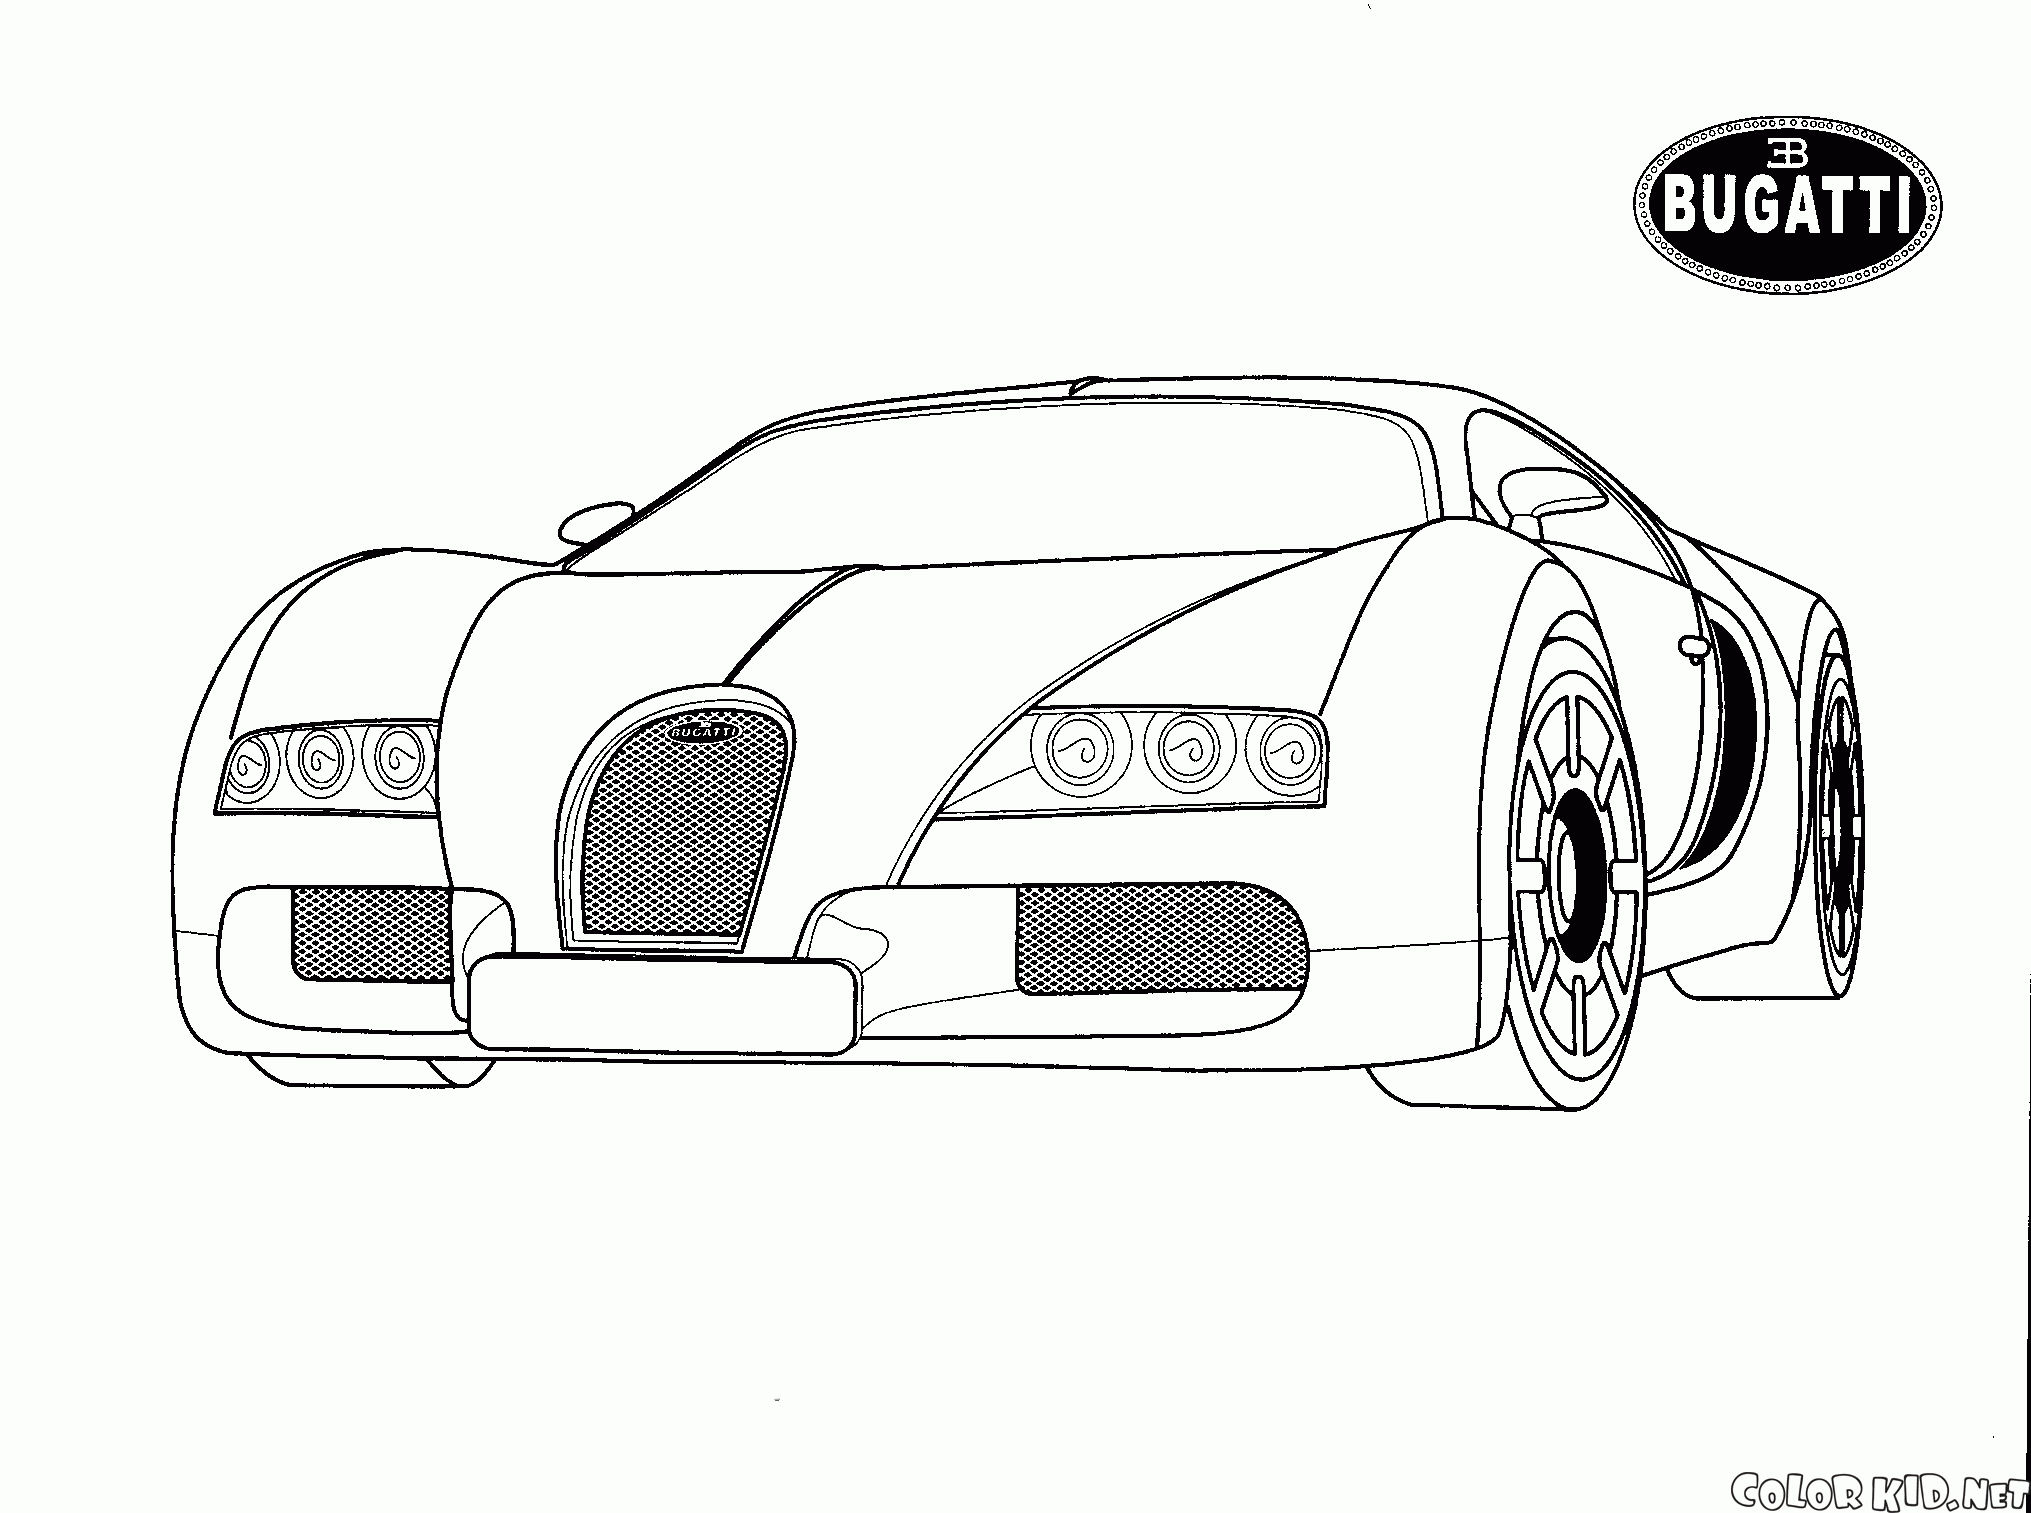 Bugatti (İtalya)